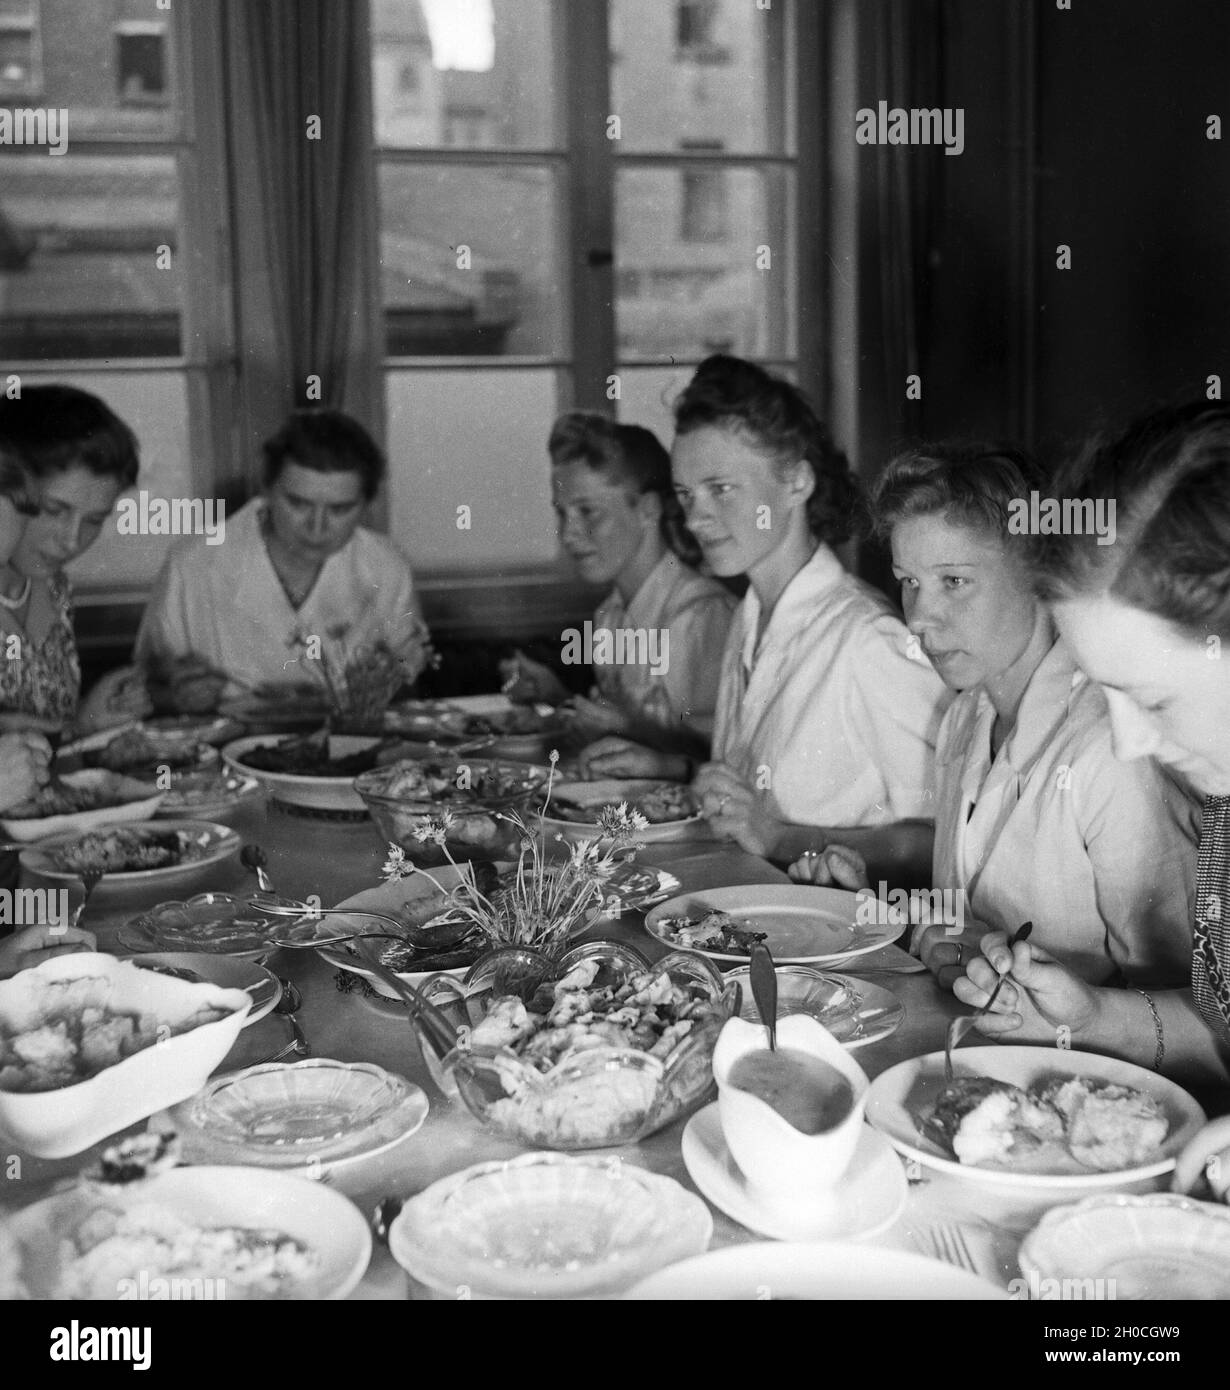 Frauen üben sich in der Hauswirtschaft in einer der BDM Arbeitsgemeinschaften 'Kochen', Deutschland 1930 Jahre. Donne che esercitano e praticano l'economia nazionale in uno dei laboratori BDM 'Kochen' ('Cooking'); Germania anni trenta. Foto Stock